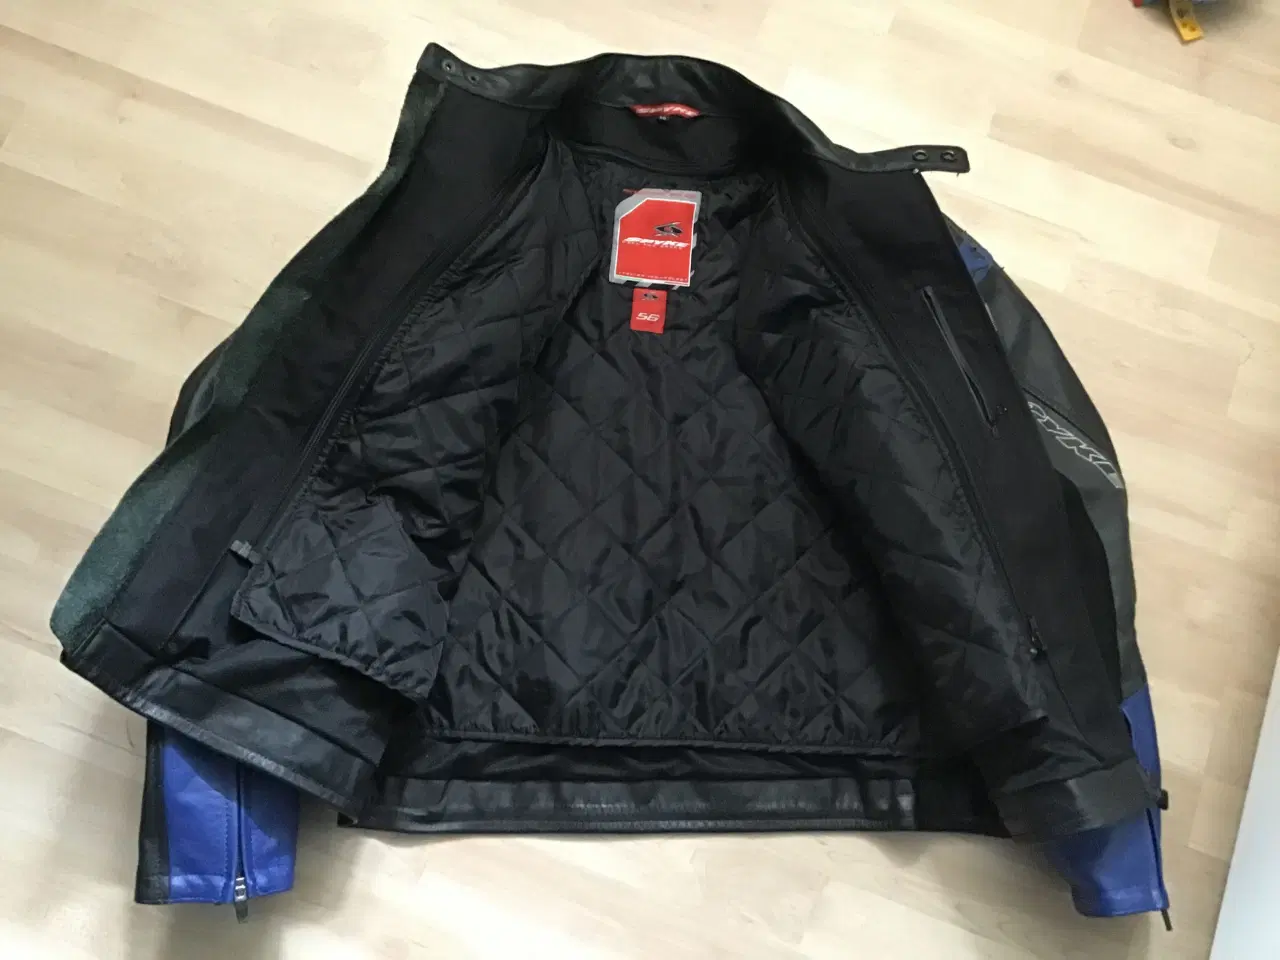 Billede 2 - Spyke mc læder jakke srt 56 sælges